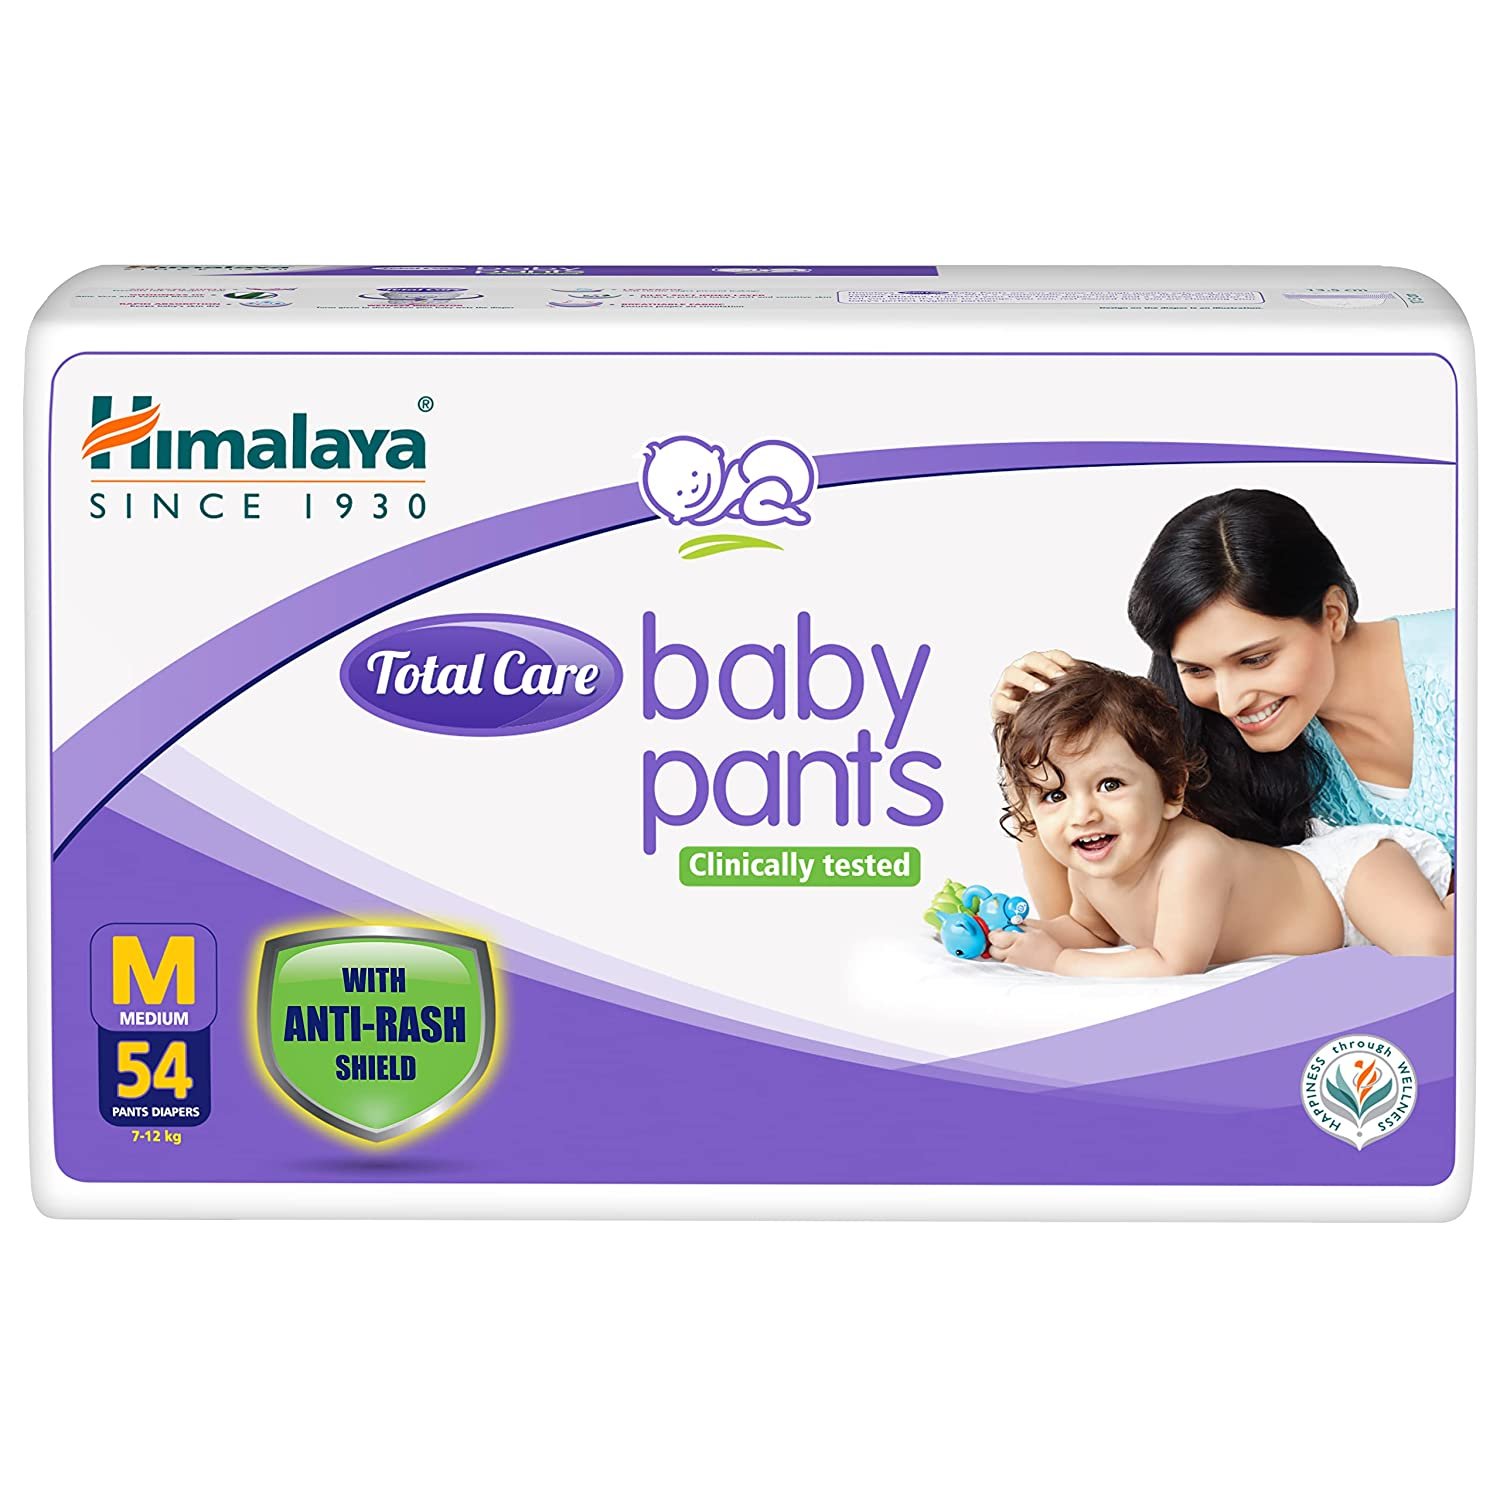 Himalaya Total Care Baby Pants Diapers, Medium (7 - 12 kg), 54 Count